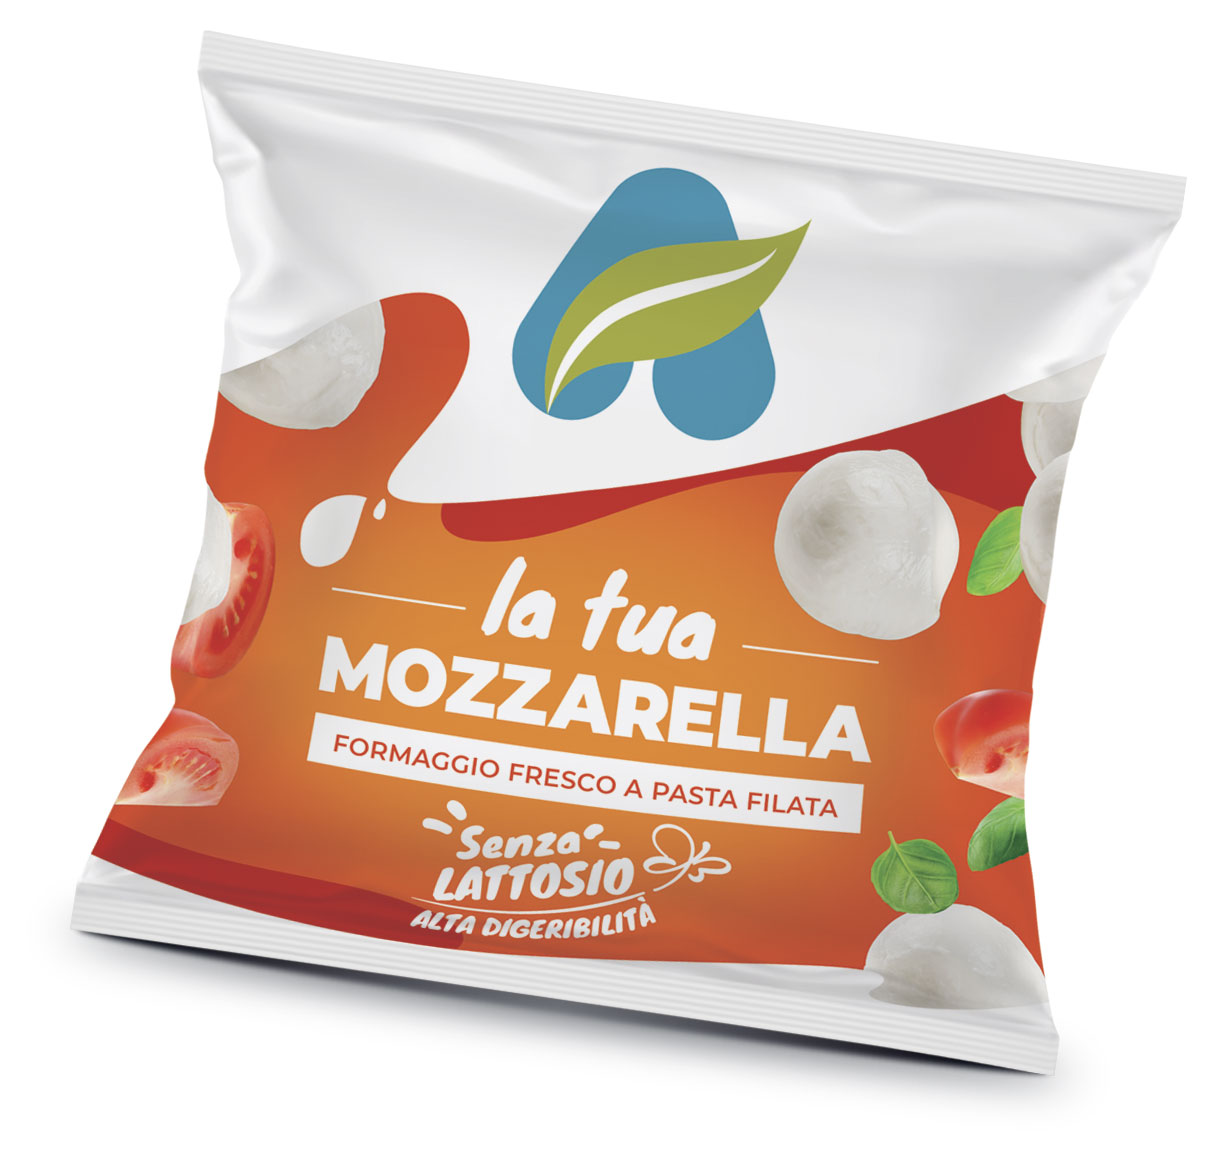 Centrale del Latte di Alessandria e Asti Packaging Mozzarella senza lattosio branding